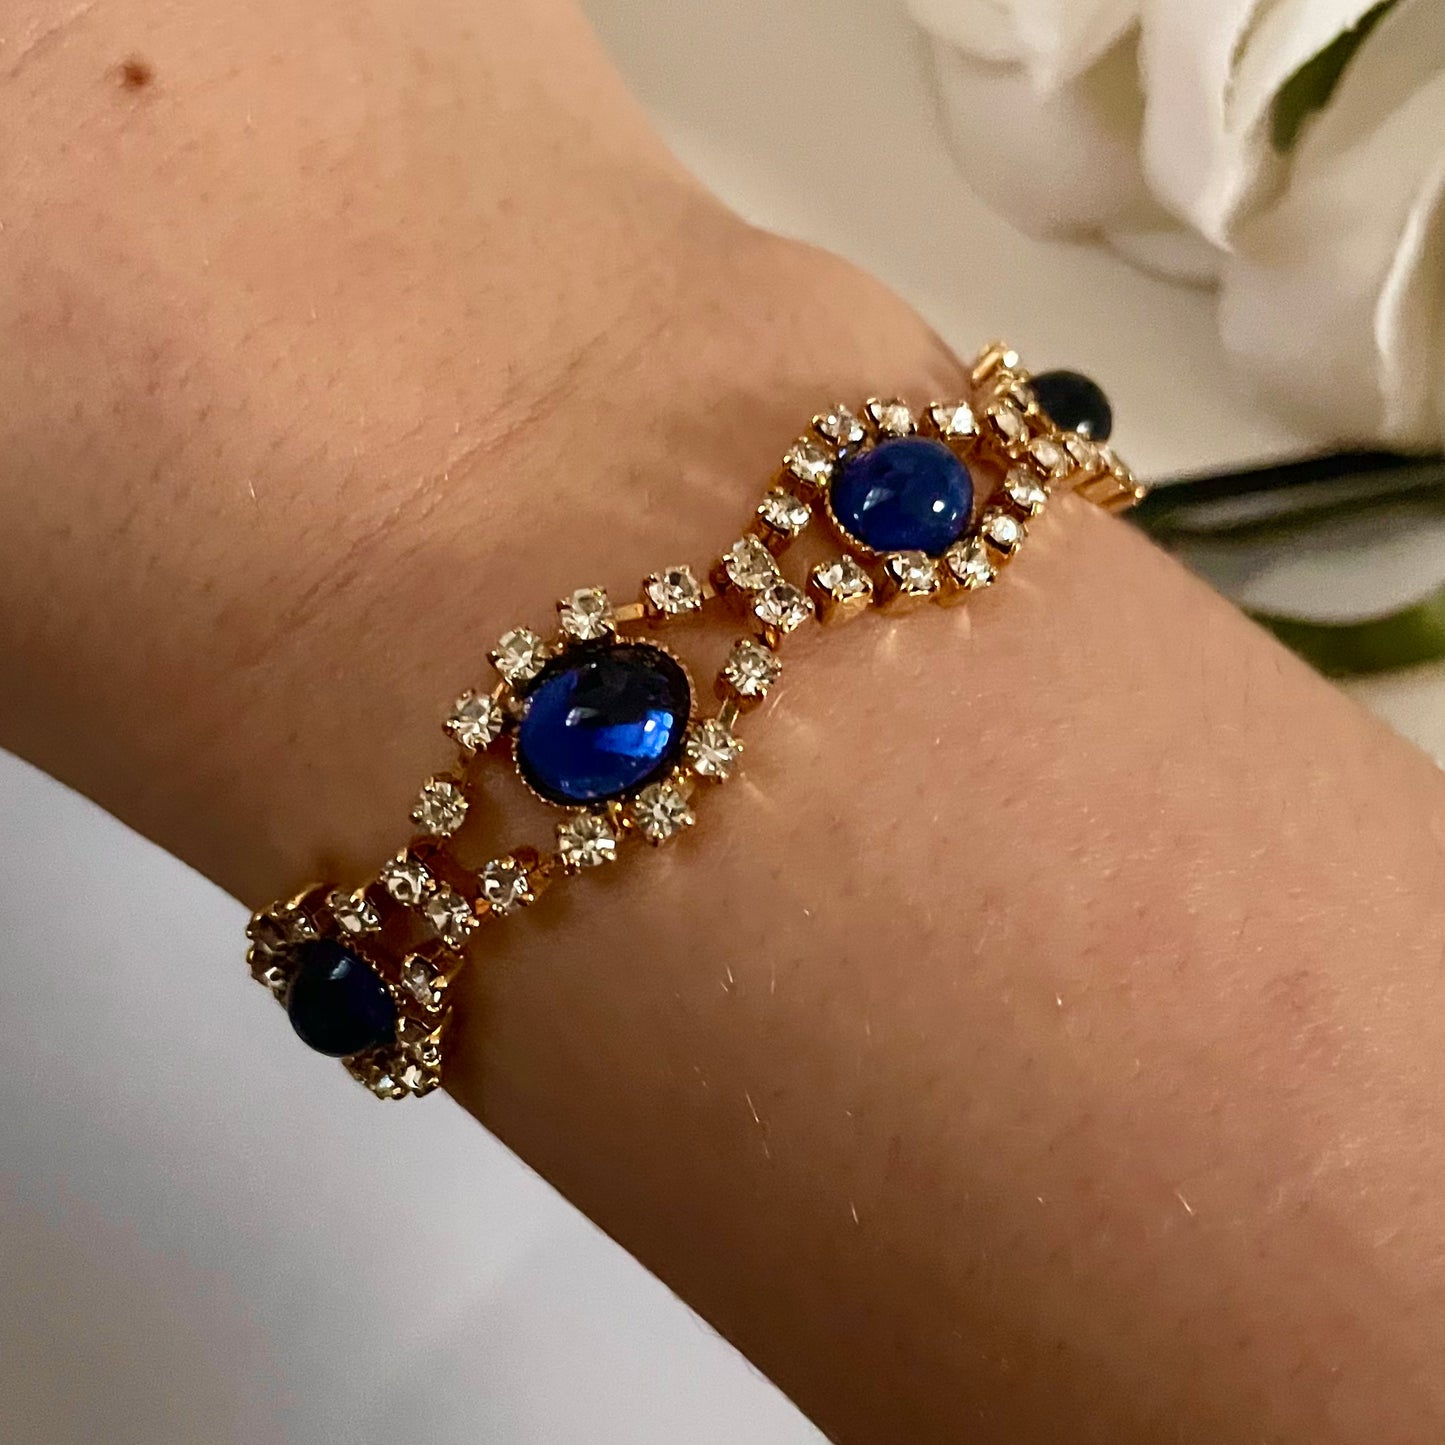 Sparkly 1980s Blue and Silver Diamanté Bracelet